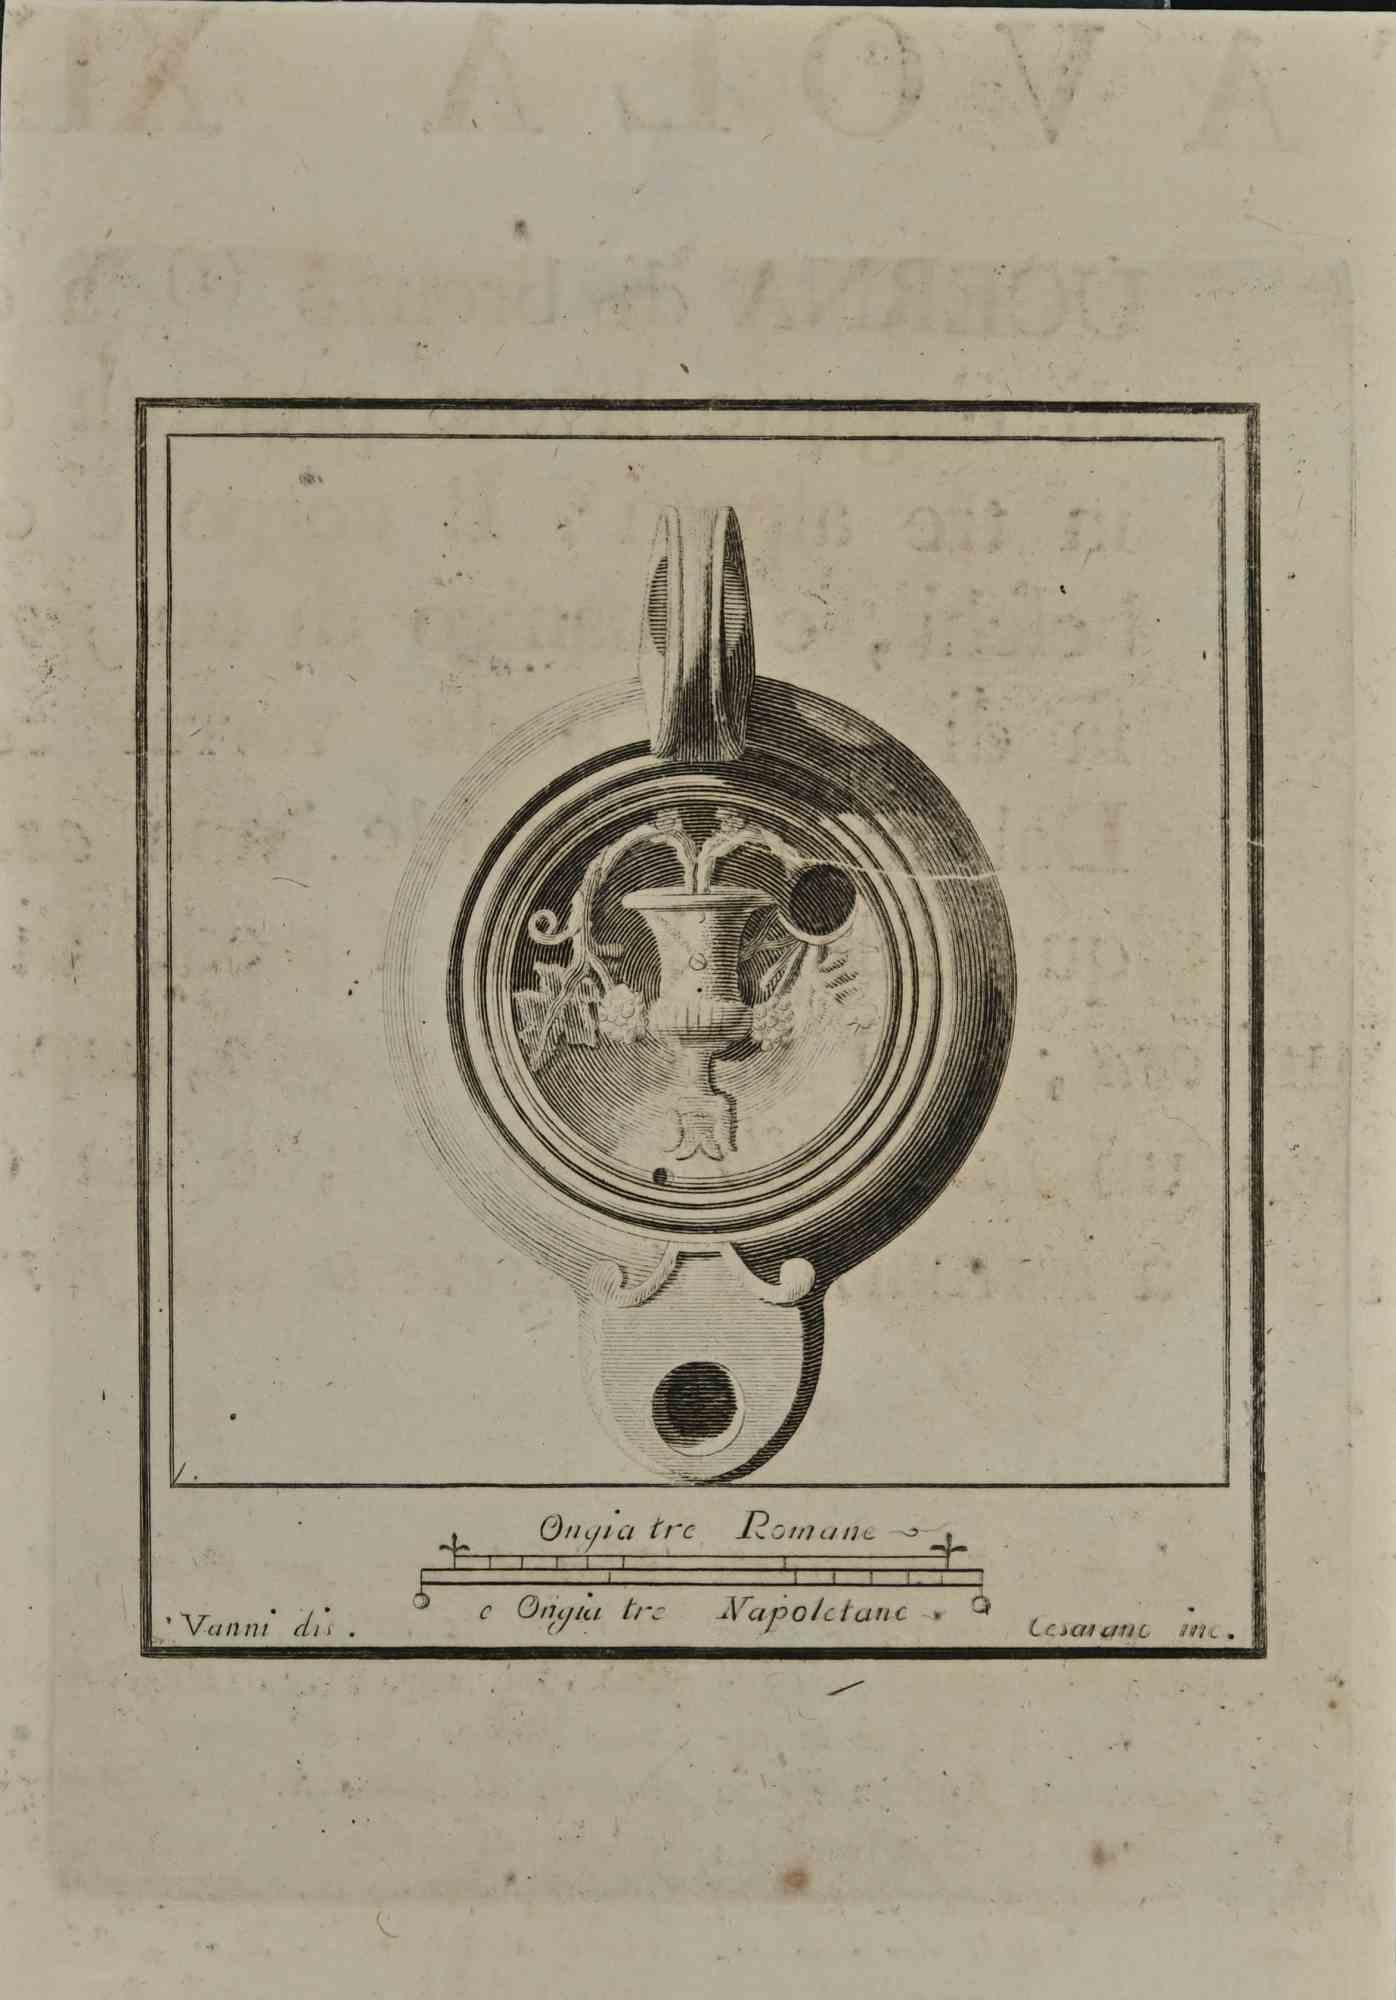 Nature morte de la série "Antiquités d'Herculanum", est une gravure sur papier réalisée par Niccolo Cesarano au 18ème siècle.

Signé sur la plaque.

Bonnes conditions.

La gravure appartient à la suite d'estampes "Antiquités d'Herculanum exposées"